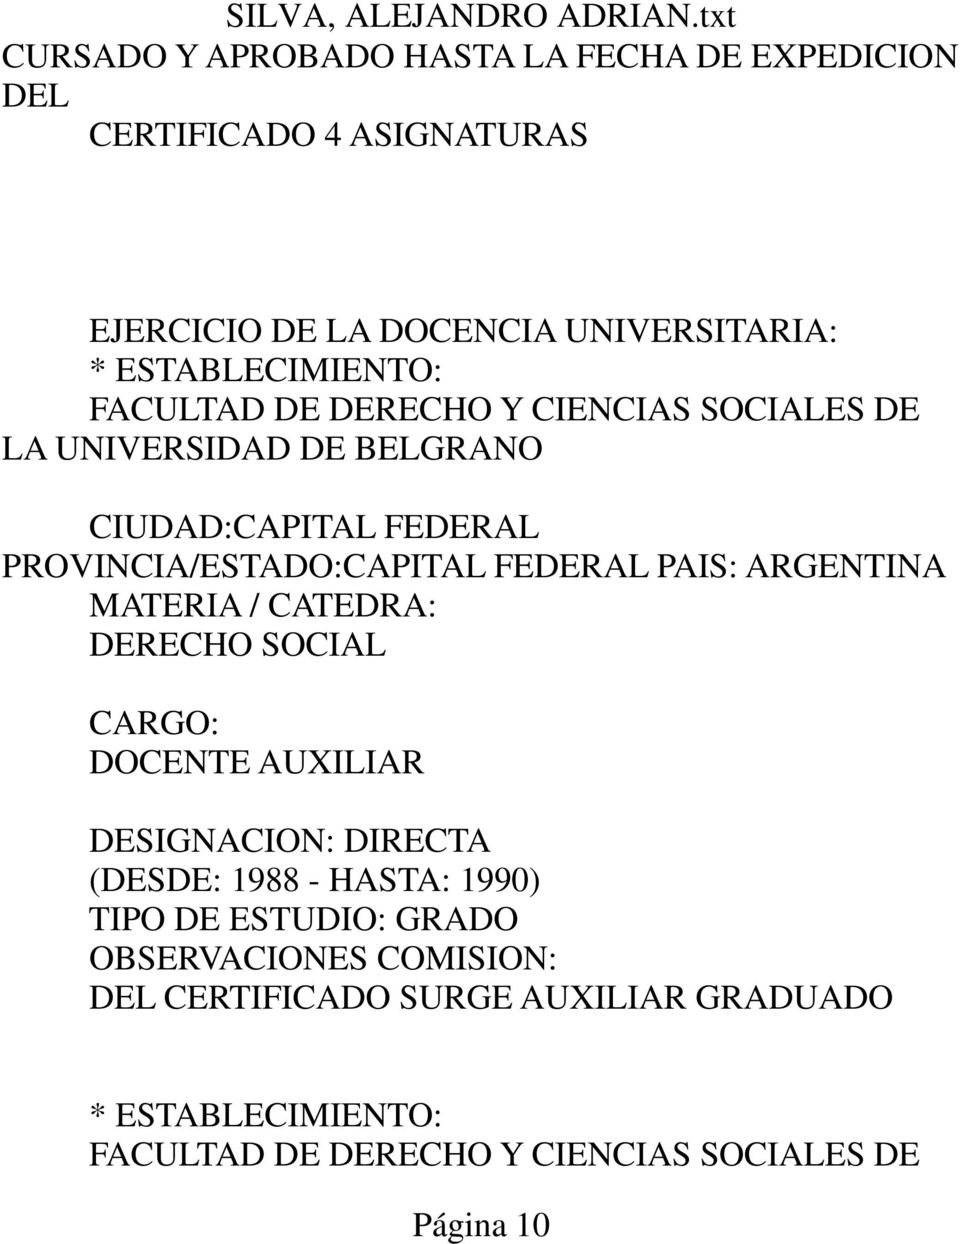 FEDERAL PAIS: ARGENTINA MATERIA / CATEDRA: DERECHO SOCIAL CARGO: DOCENTE AUXILIAR DESIGNACION: DIRECTA (DESDE: 1988 - HASTA: 1990) TIPO